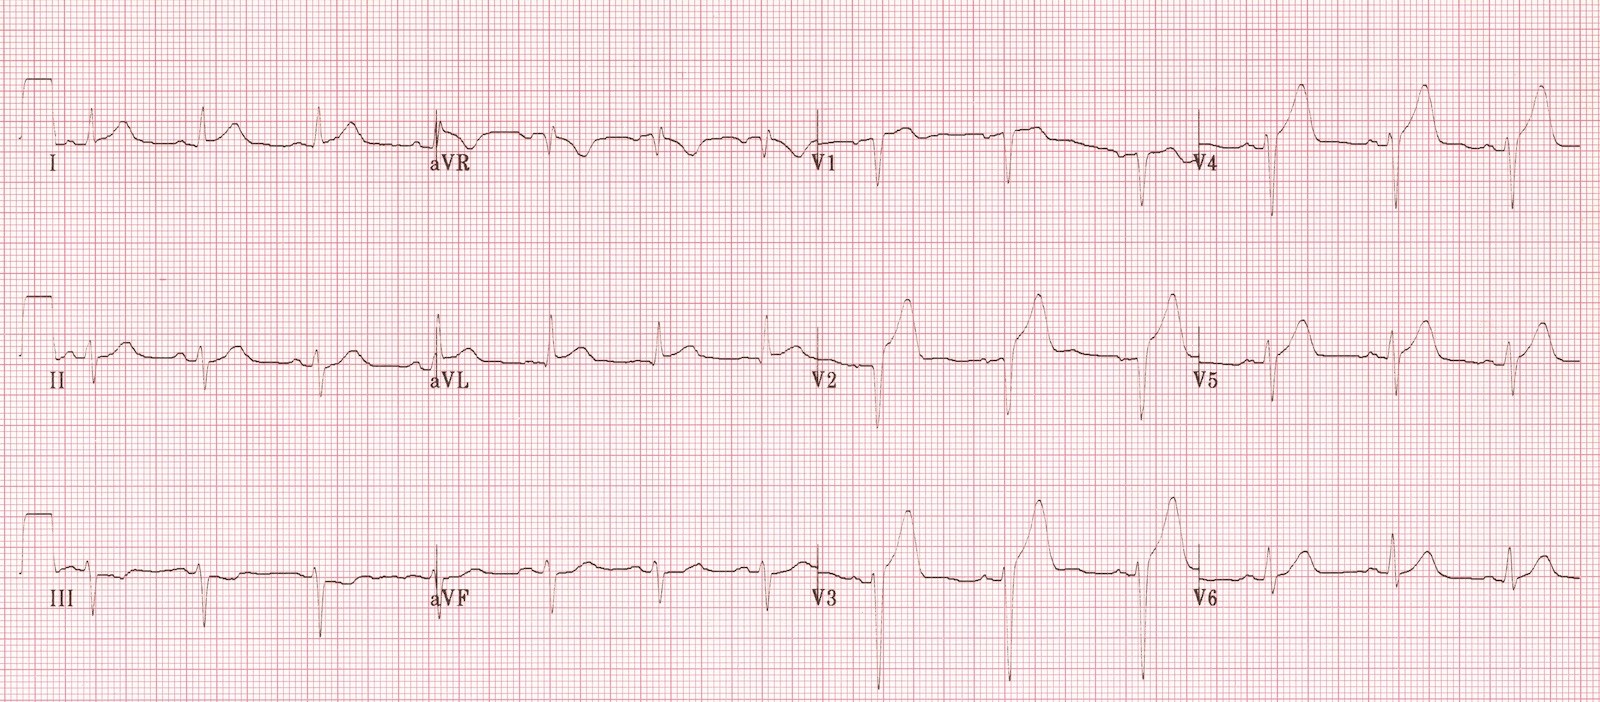 ЭКГ во время острой стадии инфаркта передней стенки и перегородки (инфаркт миокарда с подъемом ST).